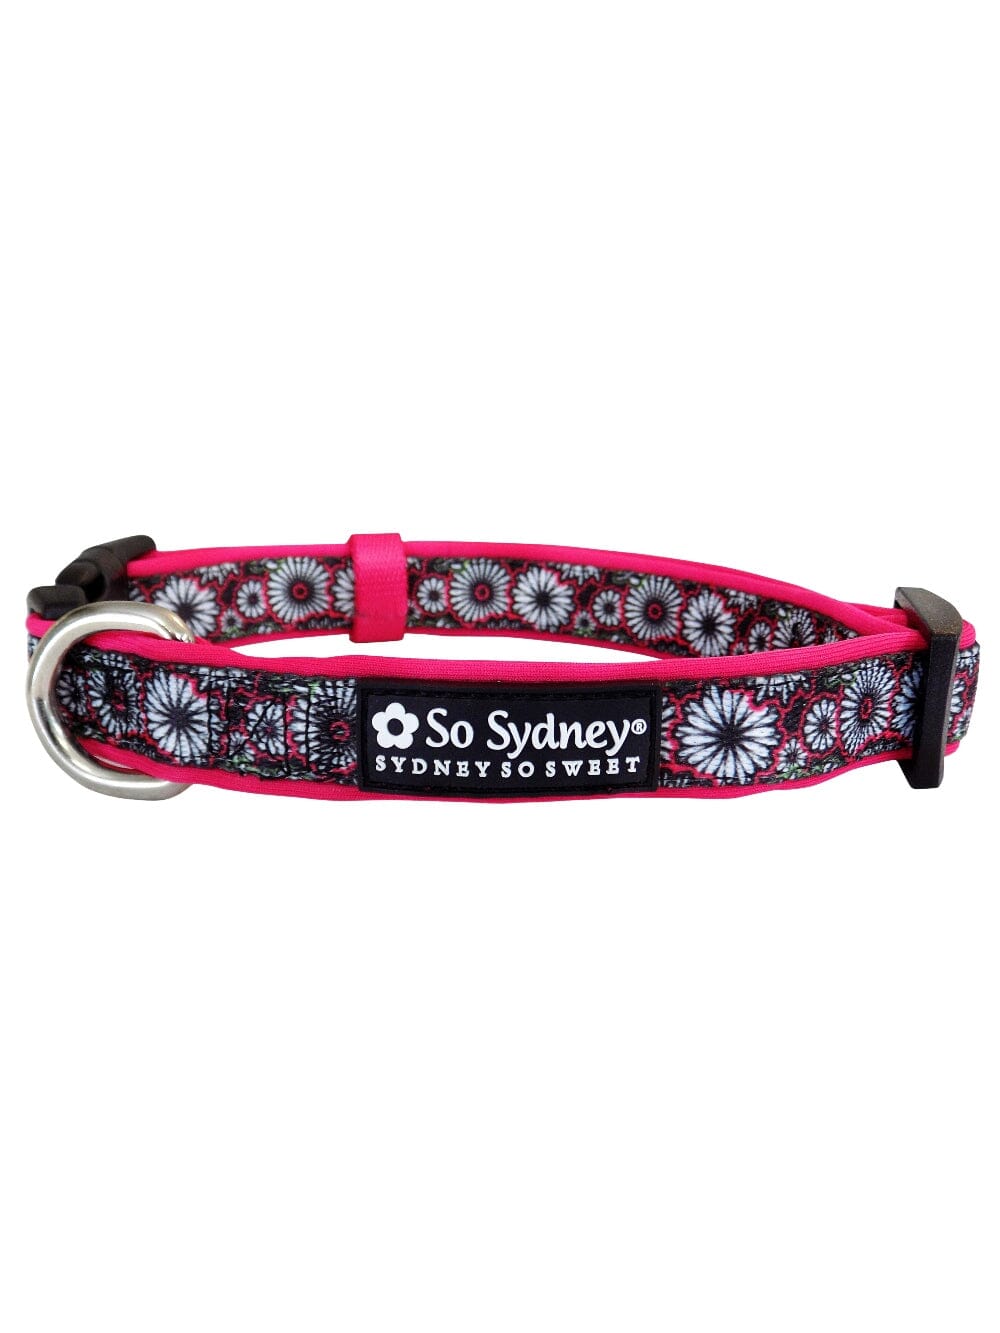 Hot Pink & Black Daisy Floral Fashion Cute Dog Collar - Sydney So Sweet